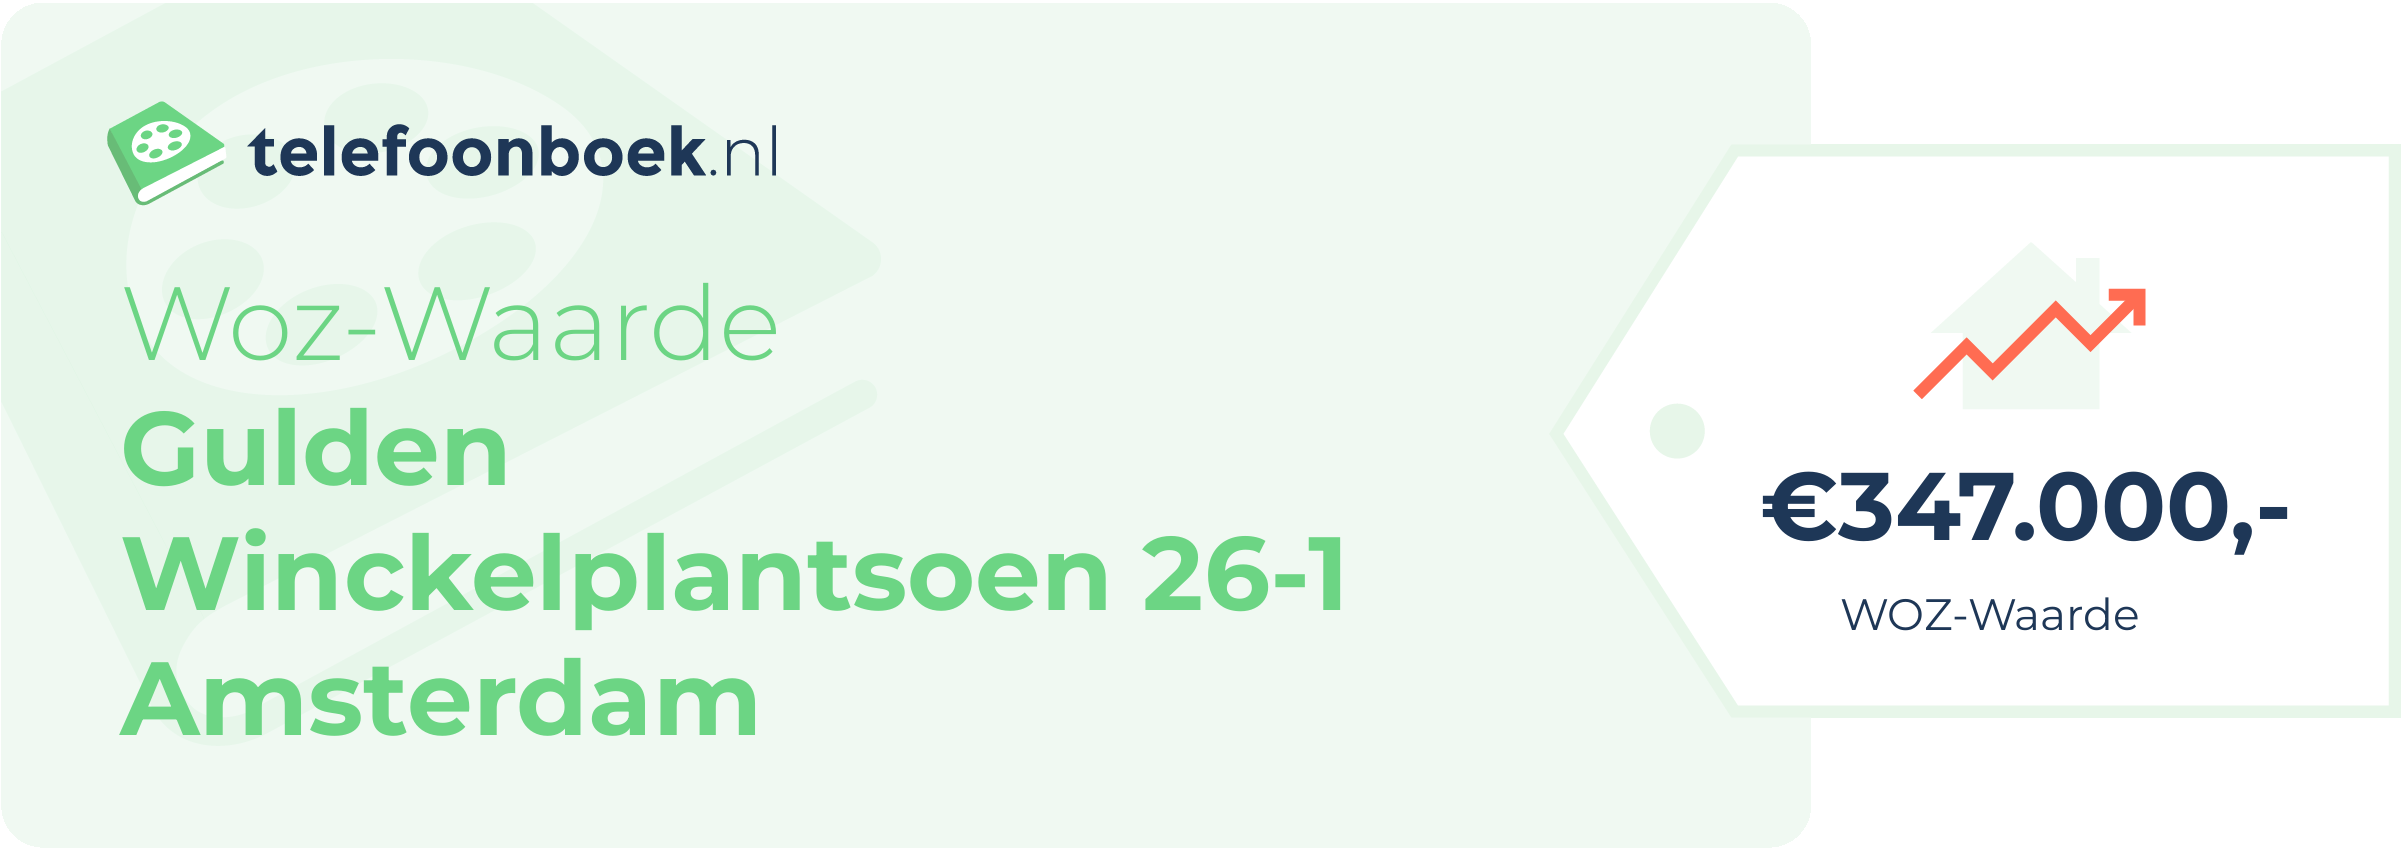 WOZ-waarde Gulden Winckelplantsoen 26-1 Amsterdam